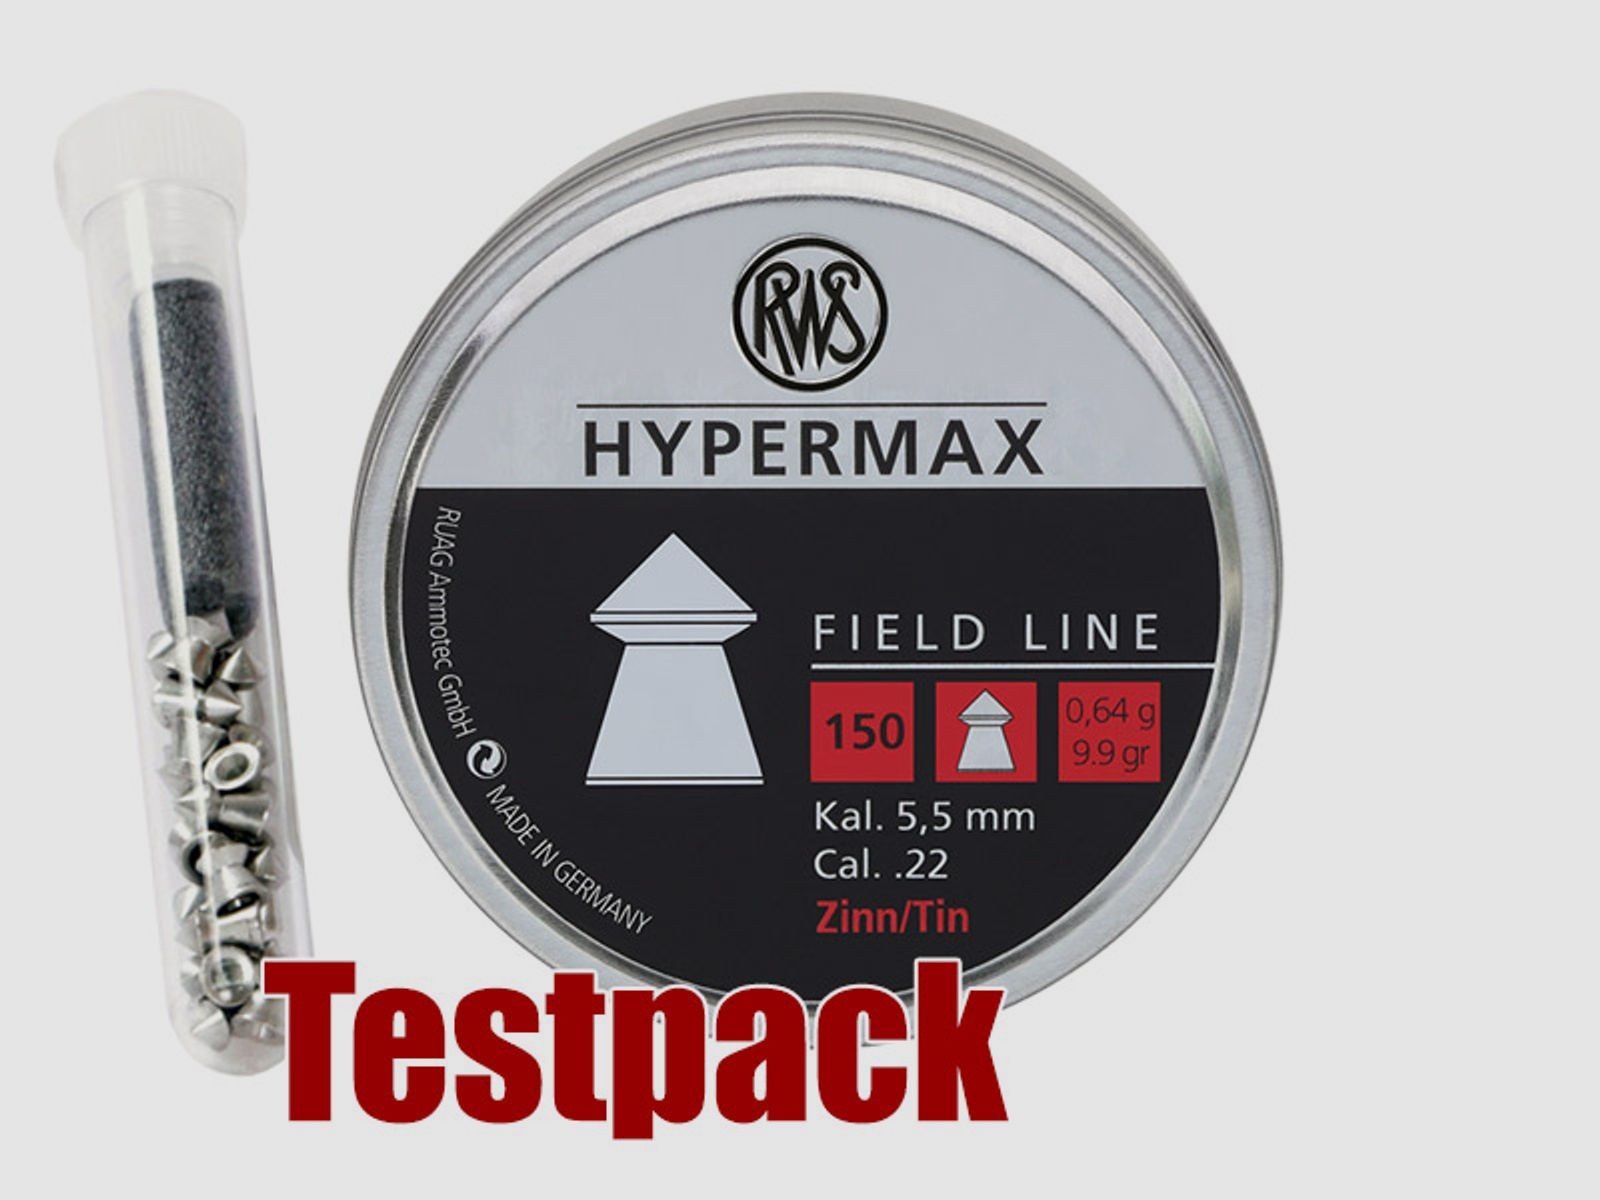 Testpack - Spitzkopf Diabolos RWS Hypermax bleifrei glatt Kaliber 5,5 mm 0,64 g 20 StĂĽck